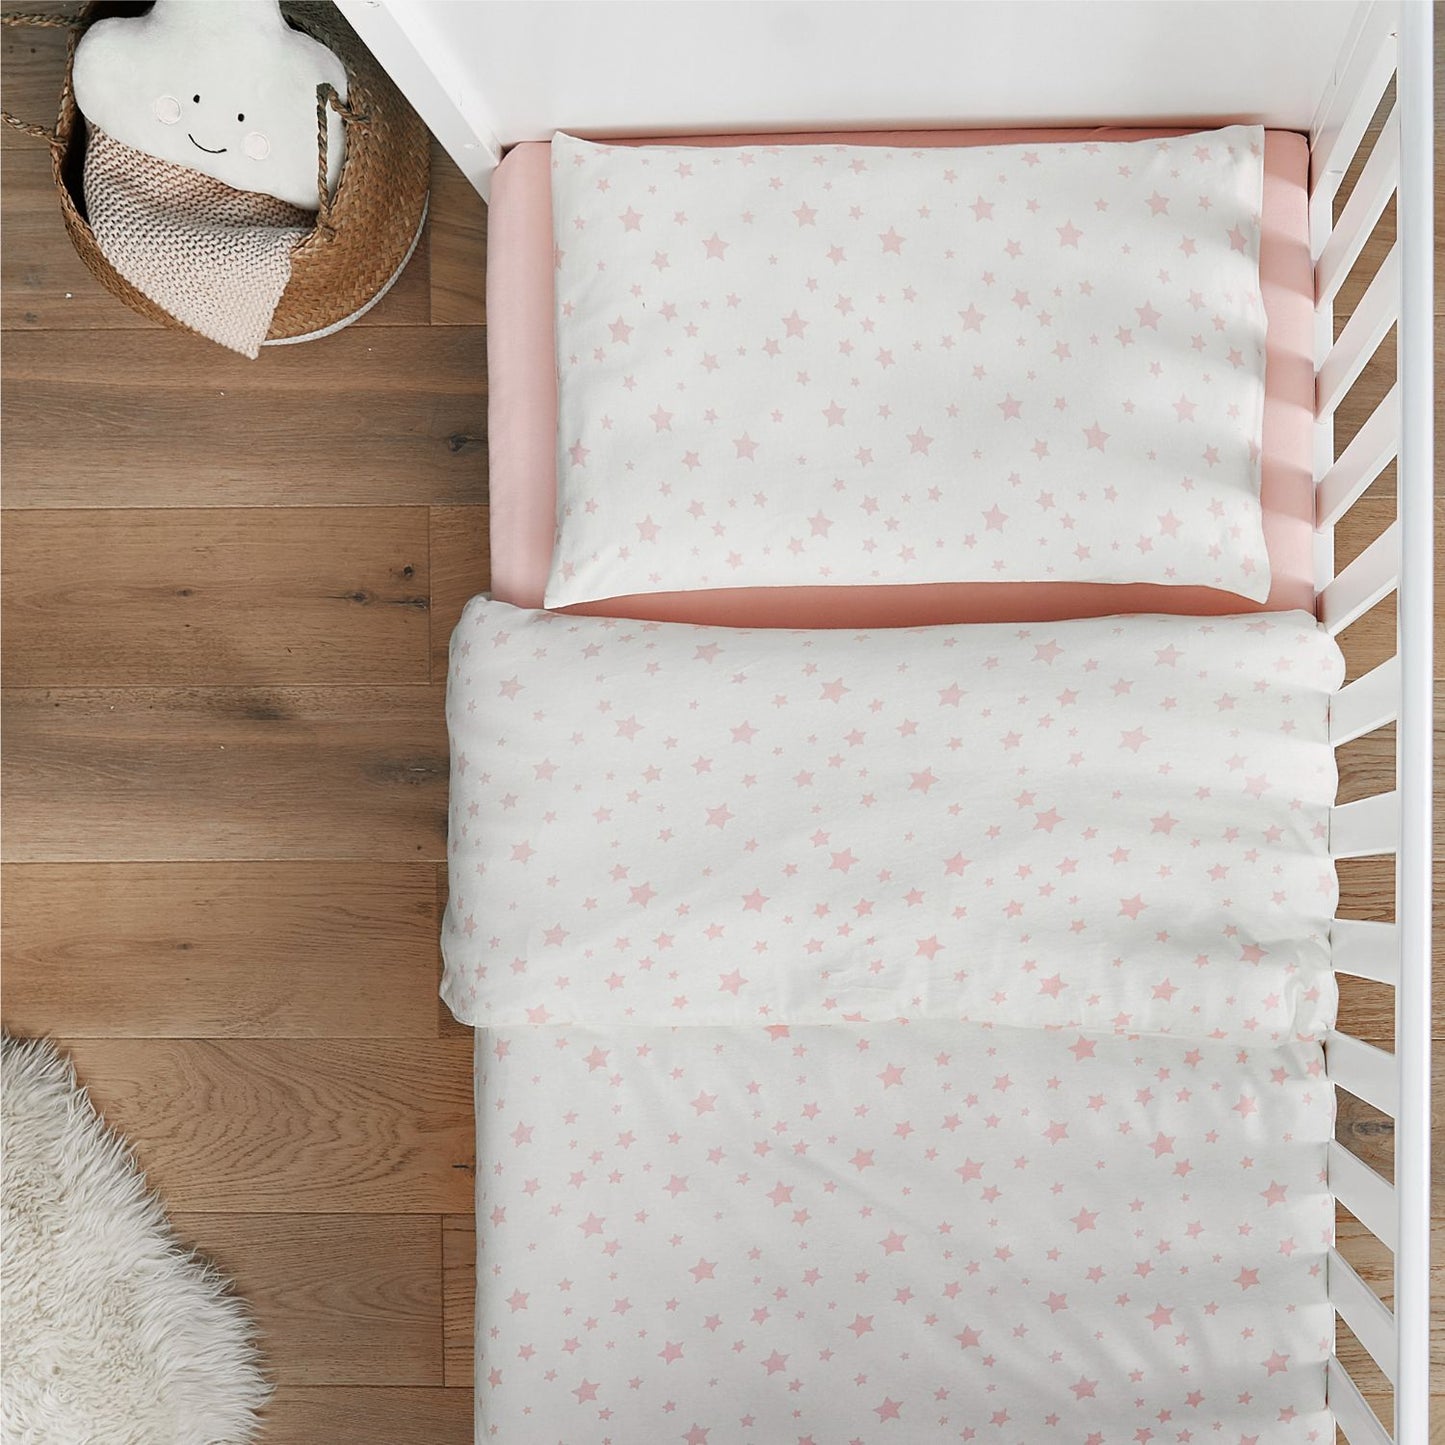 Silentnight Safe Nights Pink Star 100% Cotton Cot Bed Duvet Set